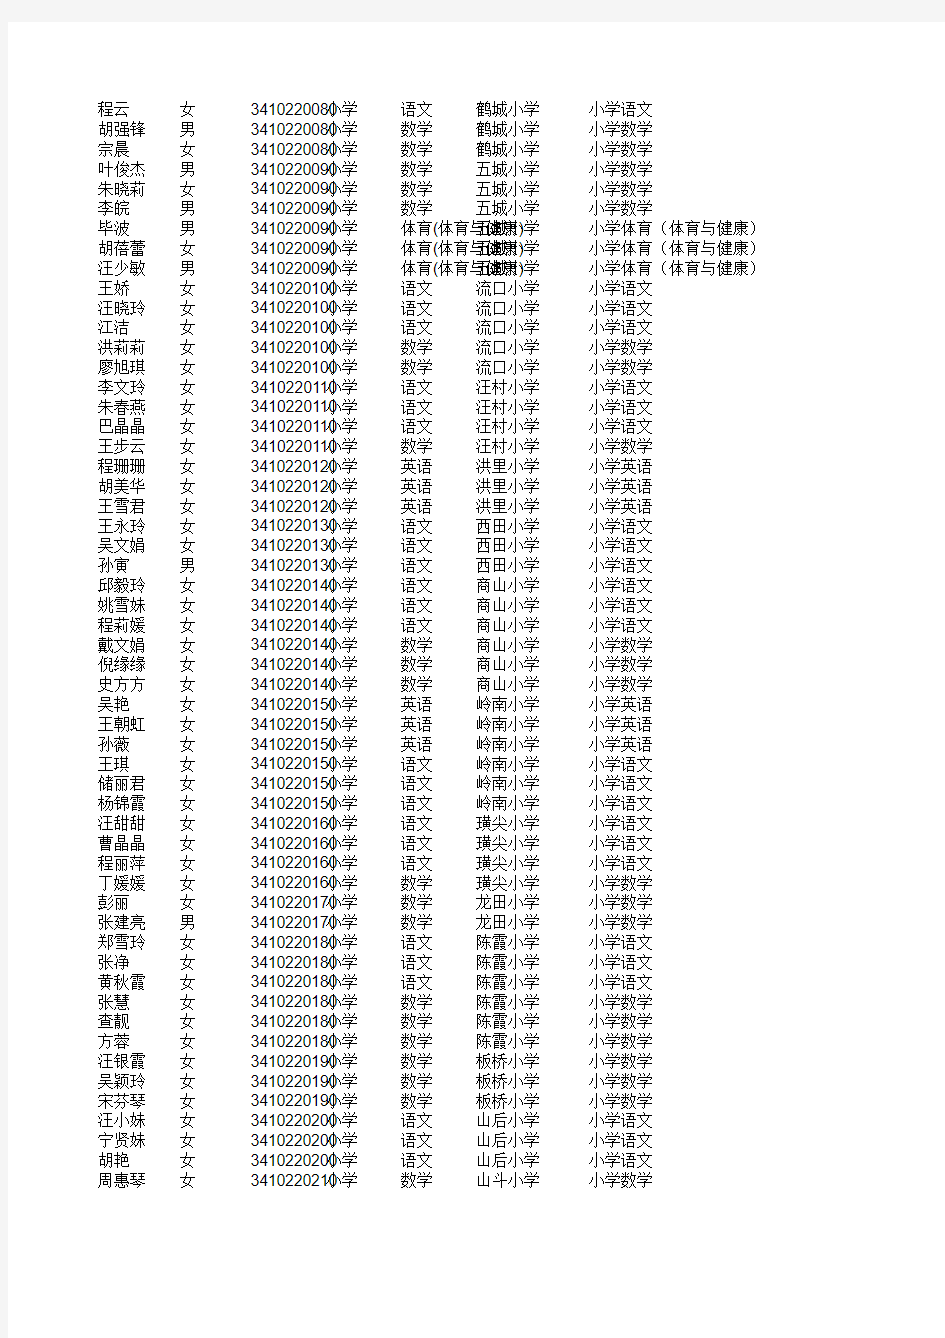 《2014年度安徽省中小学新任教师现场资格复审人员名单》复审人员名单